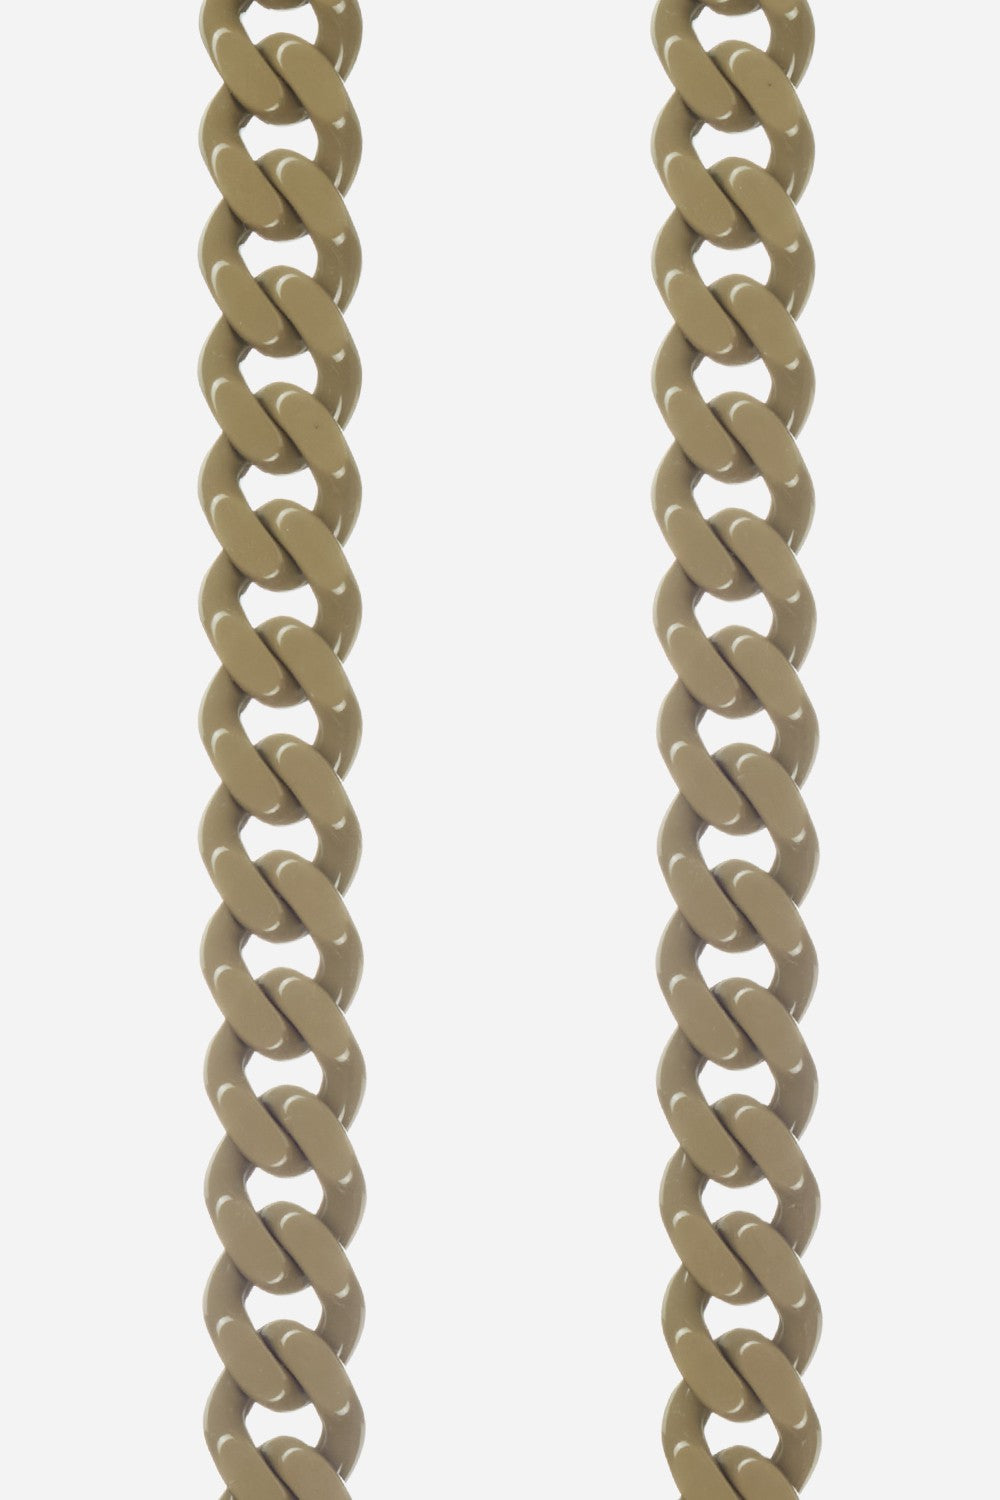 Chaine Longue Gia Kaki 120 cm